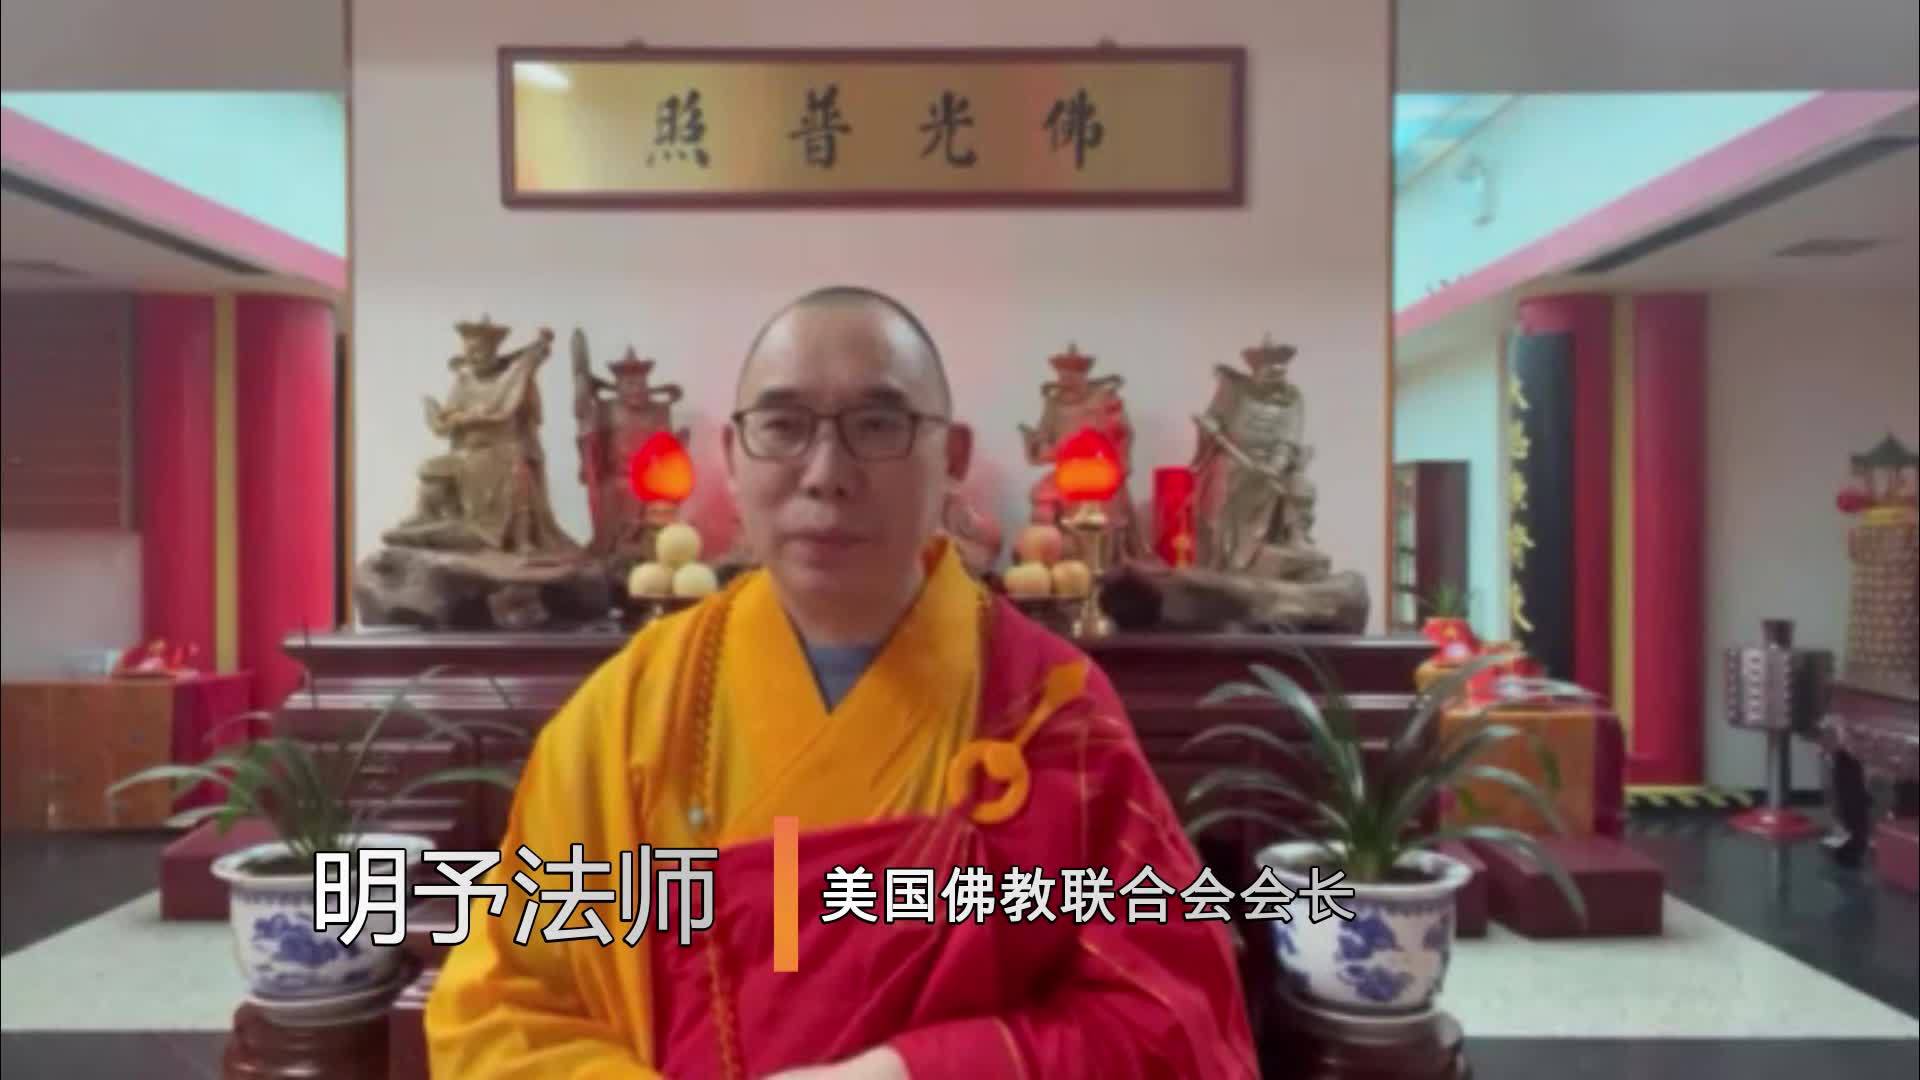 美国佛教联合会会长明予法师祝福北京冬奥会祝福中国